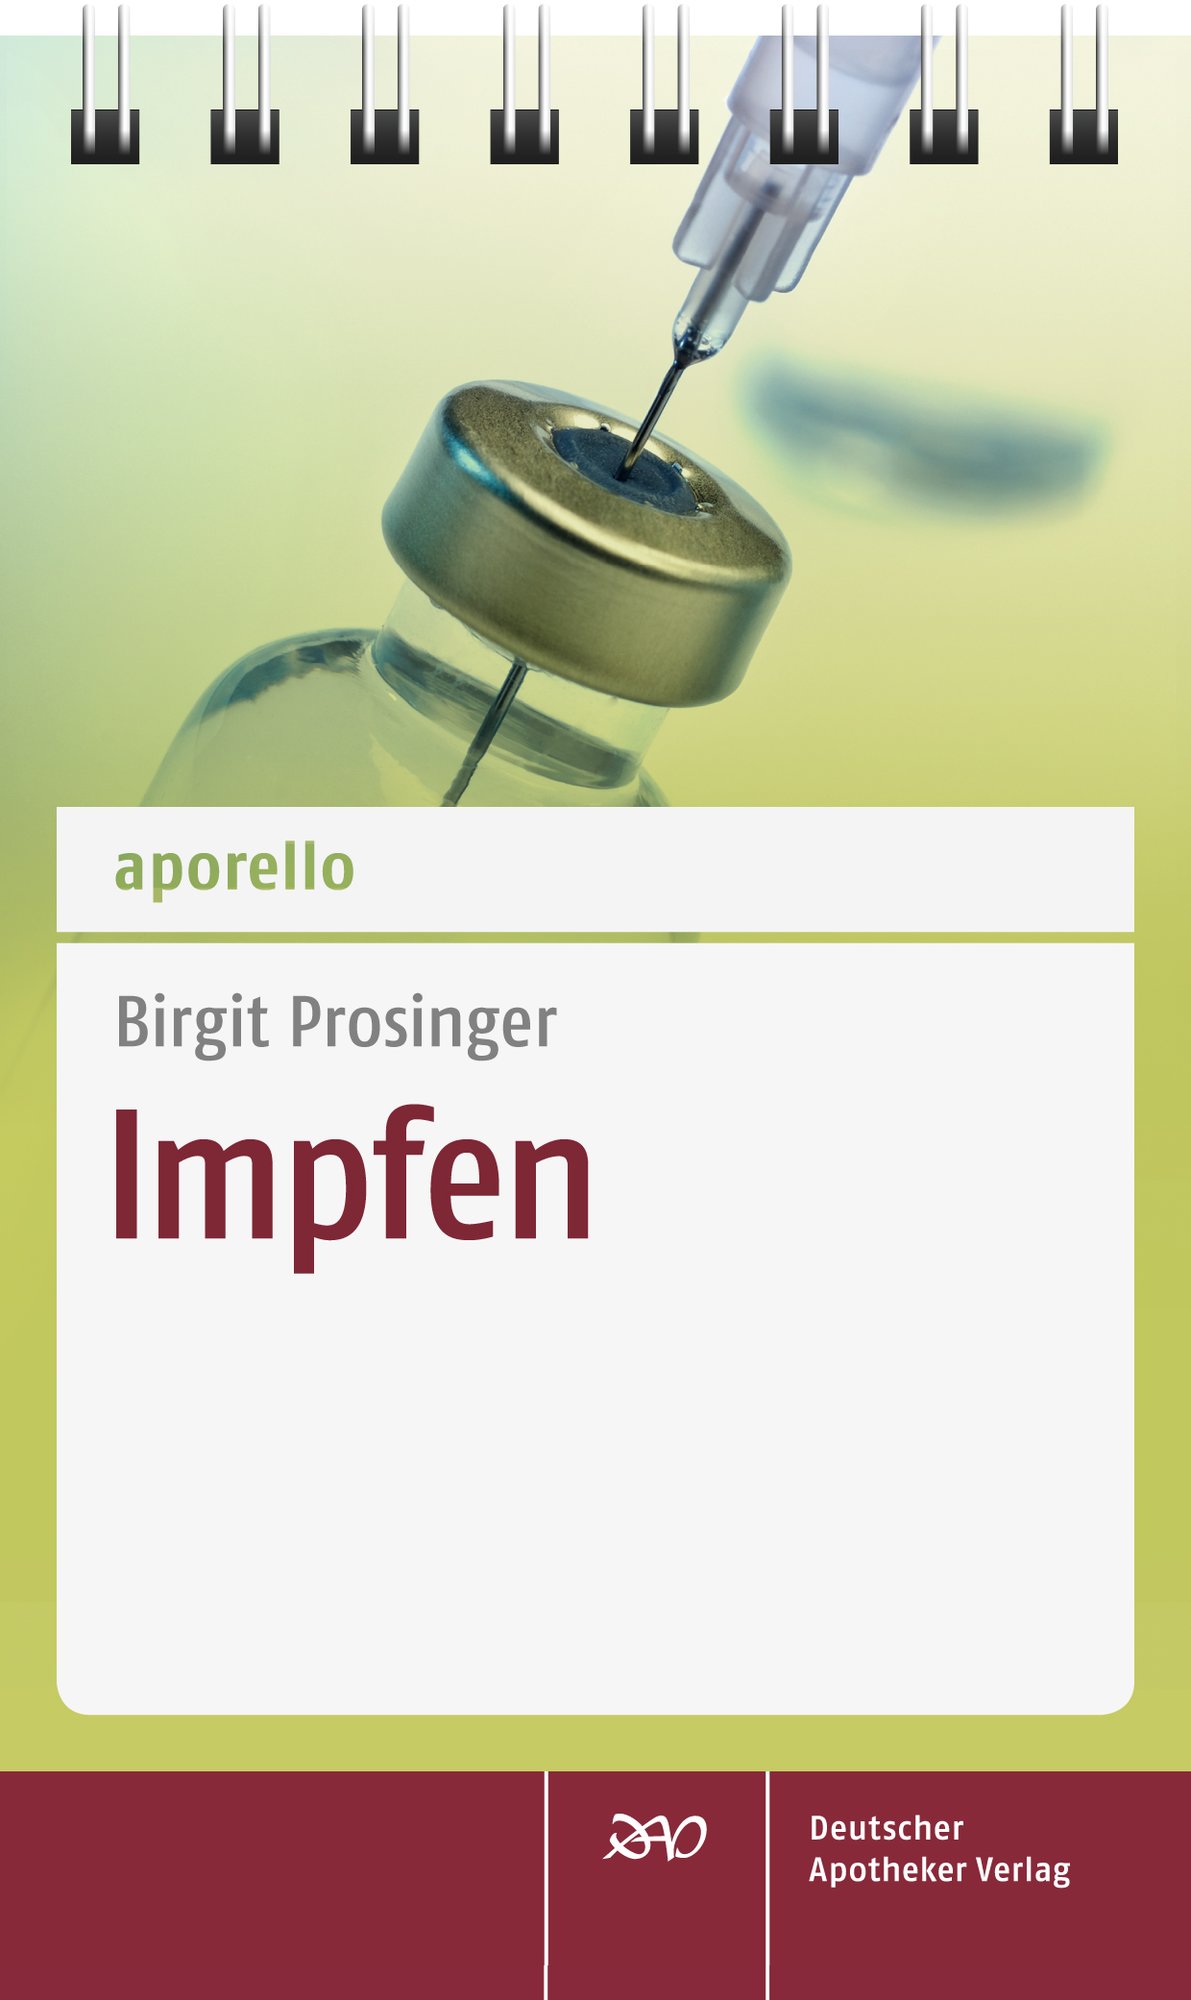 Aporello Impfen Shop Deutscher Apotheker Verlag